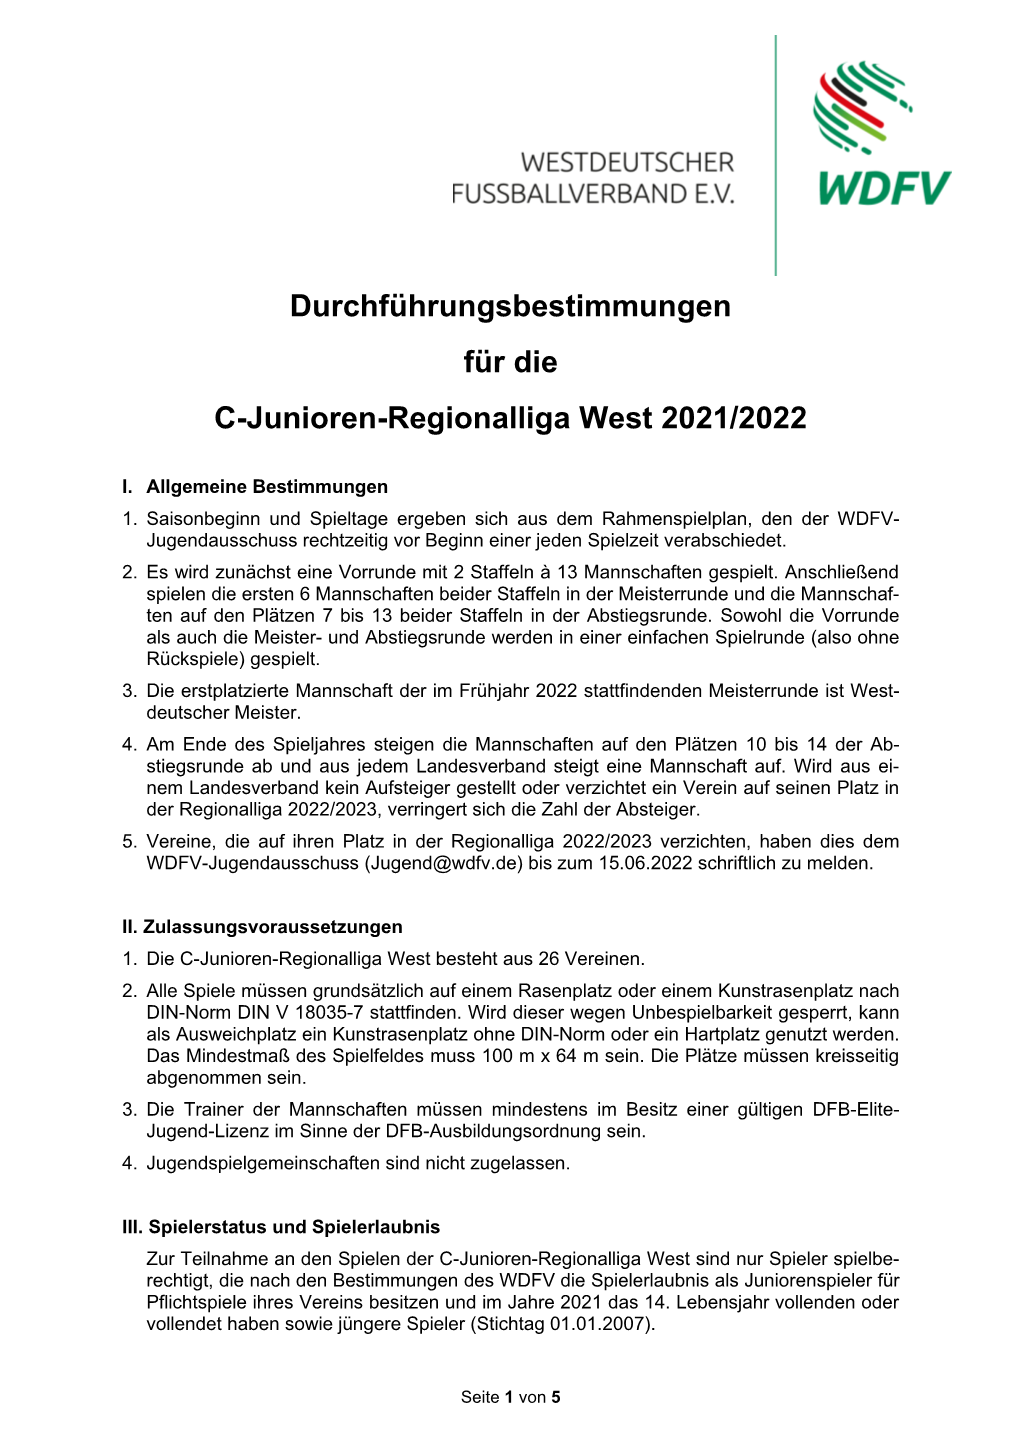 Durchführungsbestimmungen C-Junioren Regionalliga West 2021